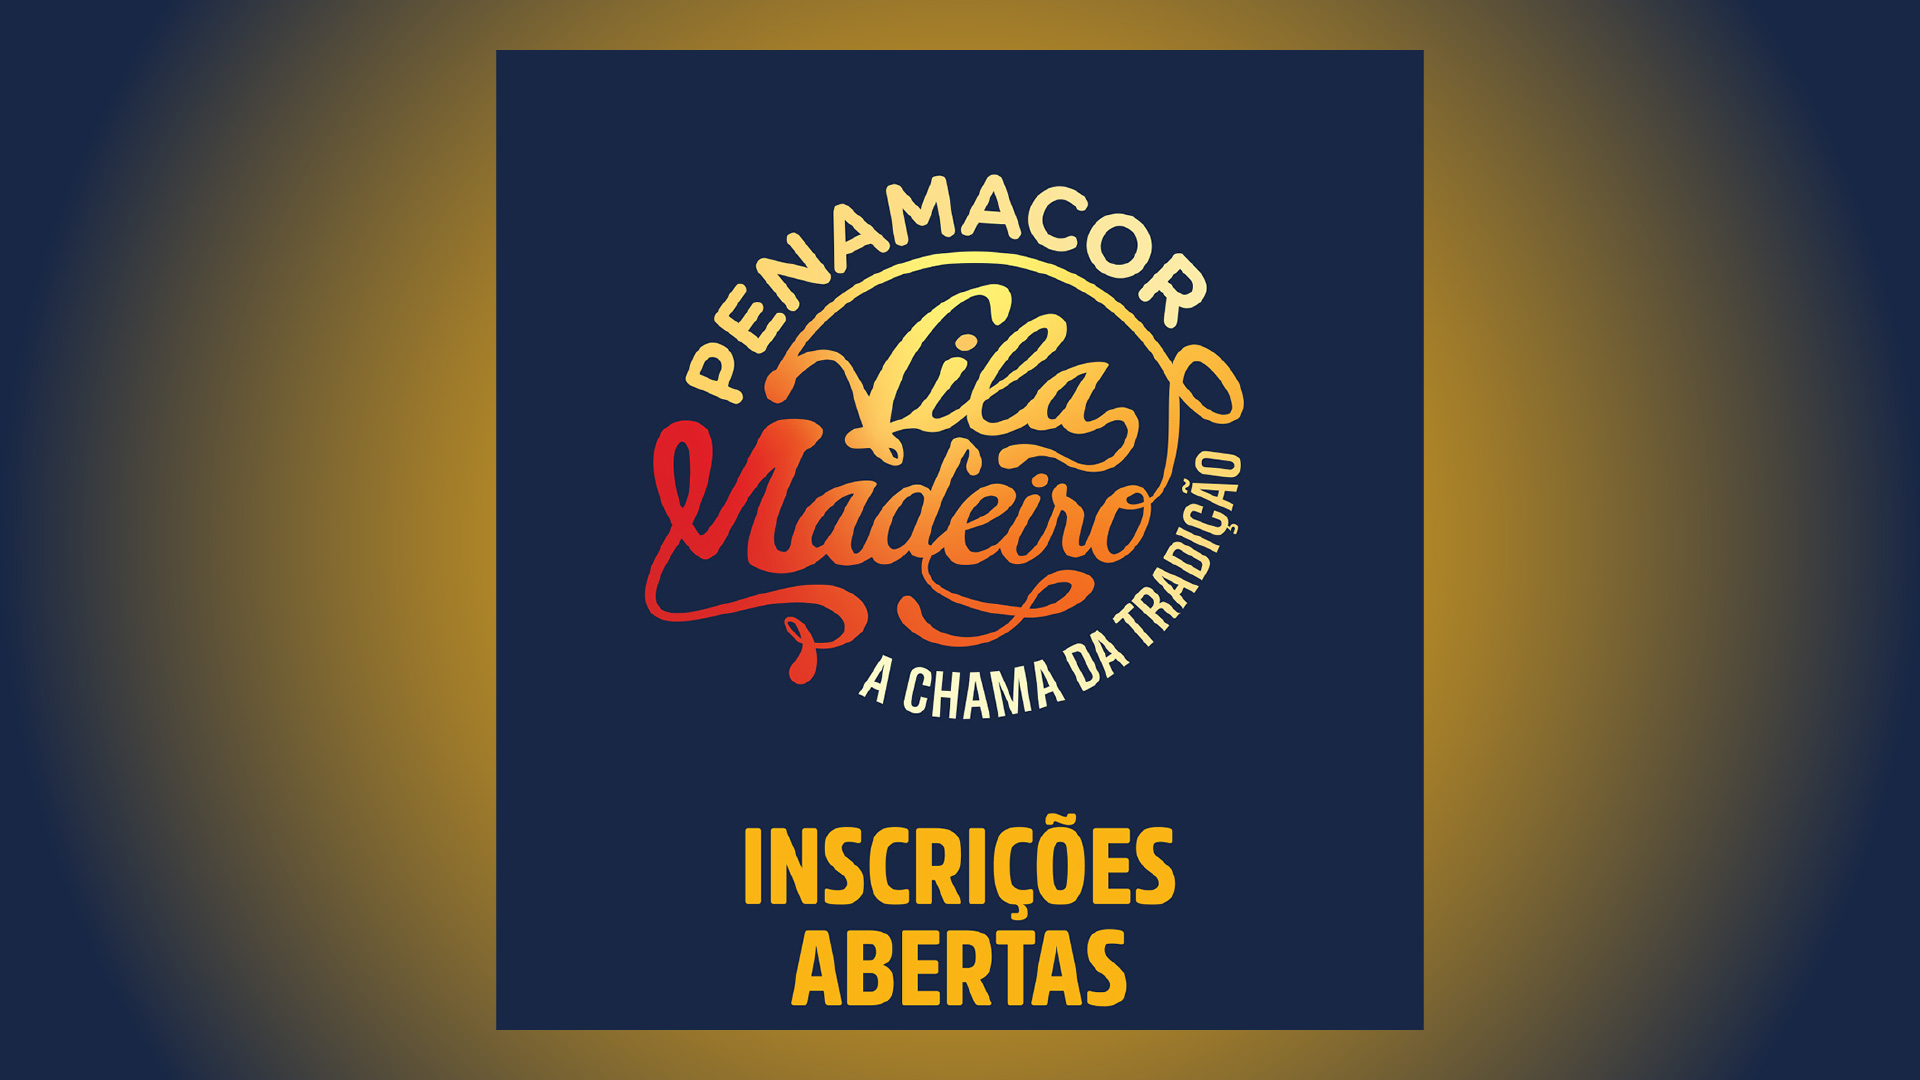 Evento natalício Penamacor Vila Madeiro, com inscrições abertas